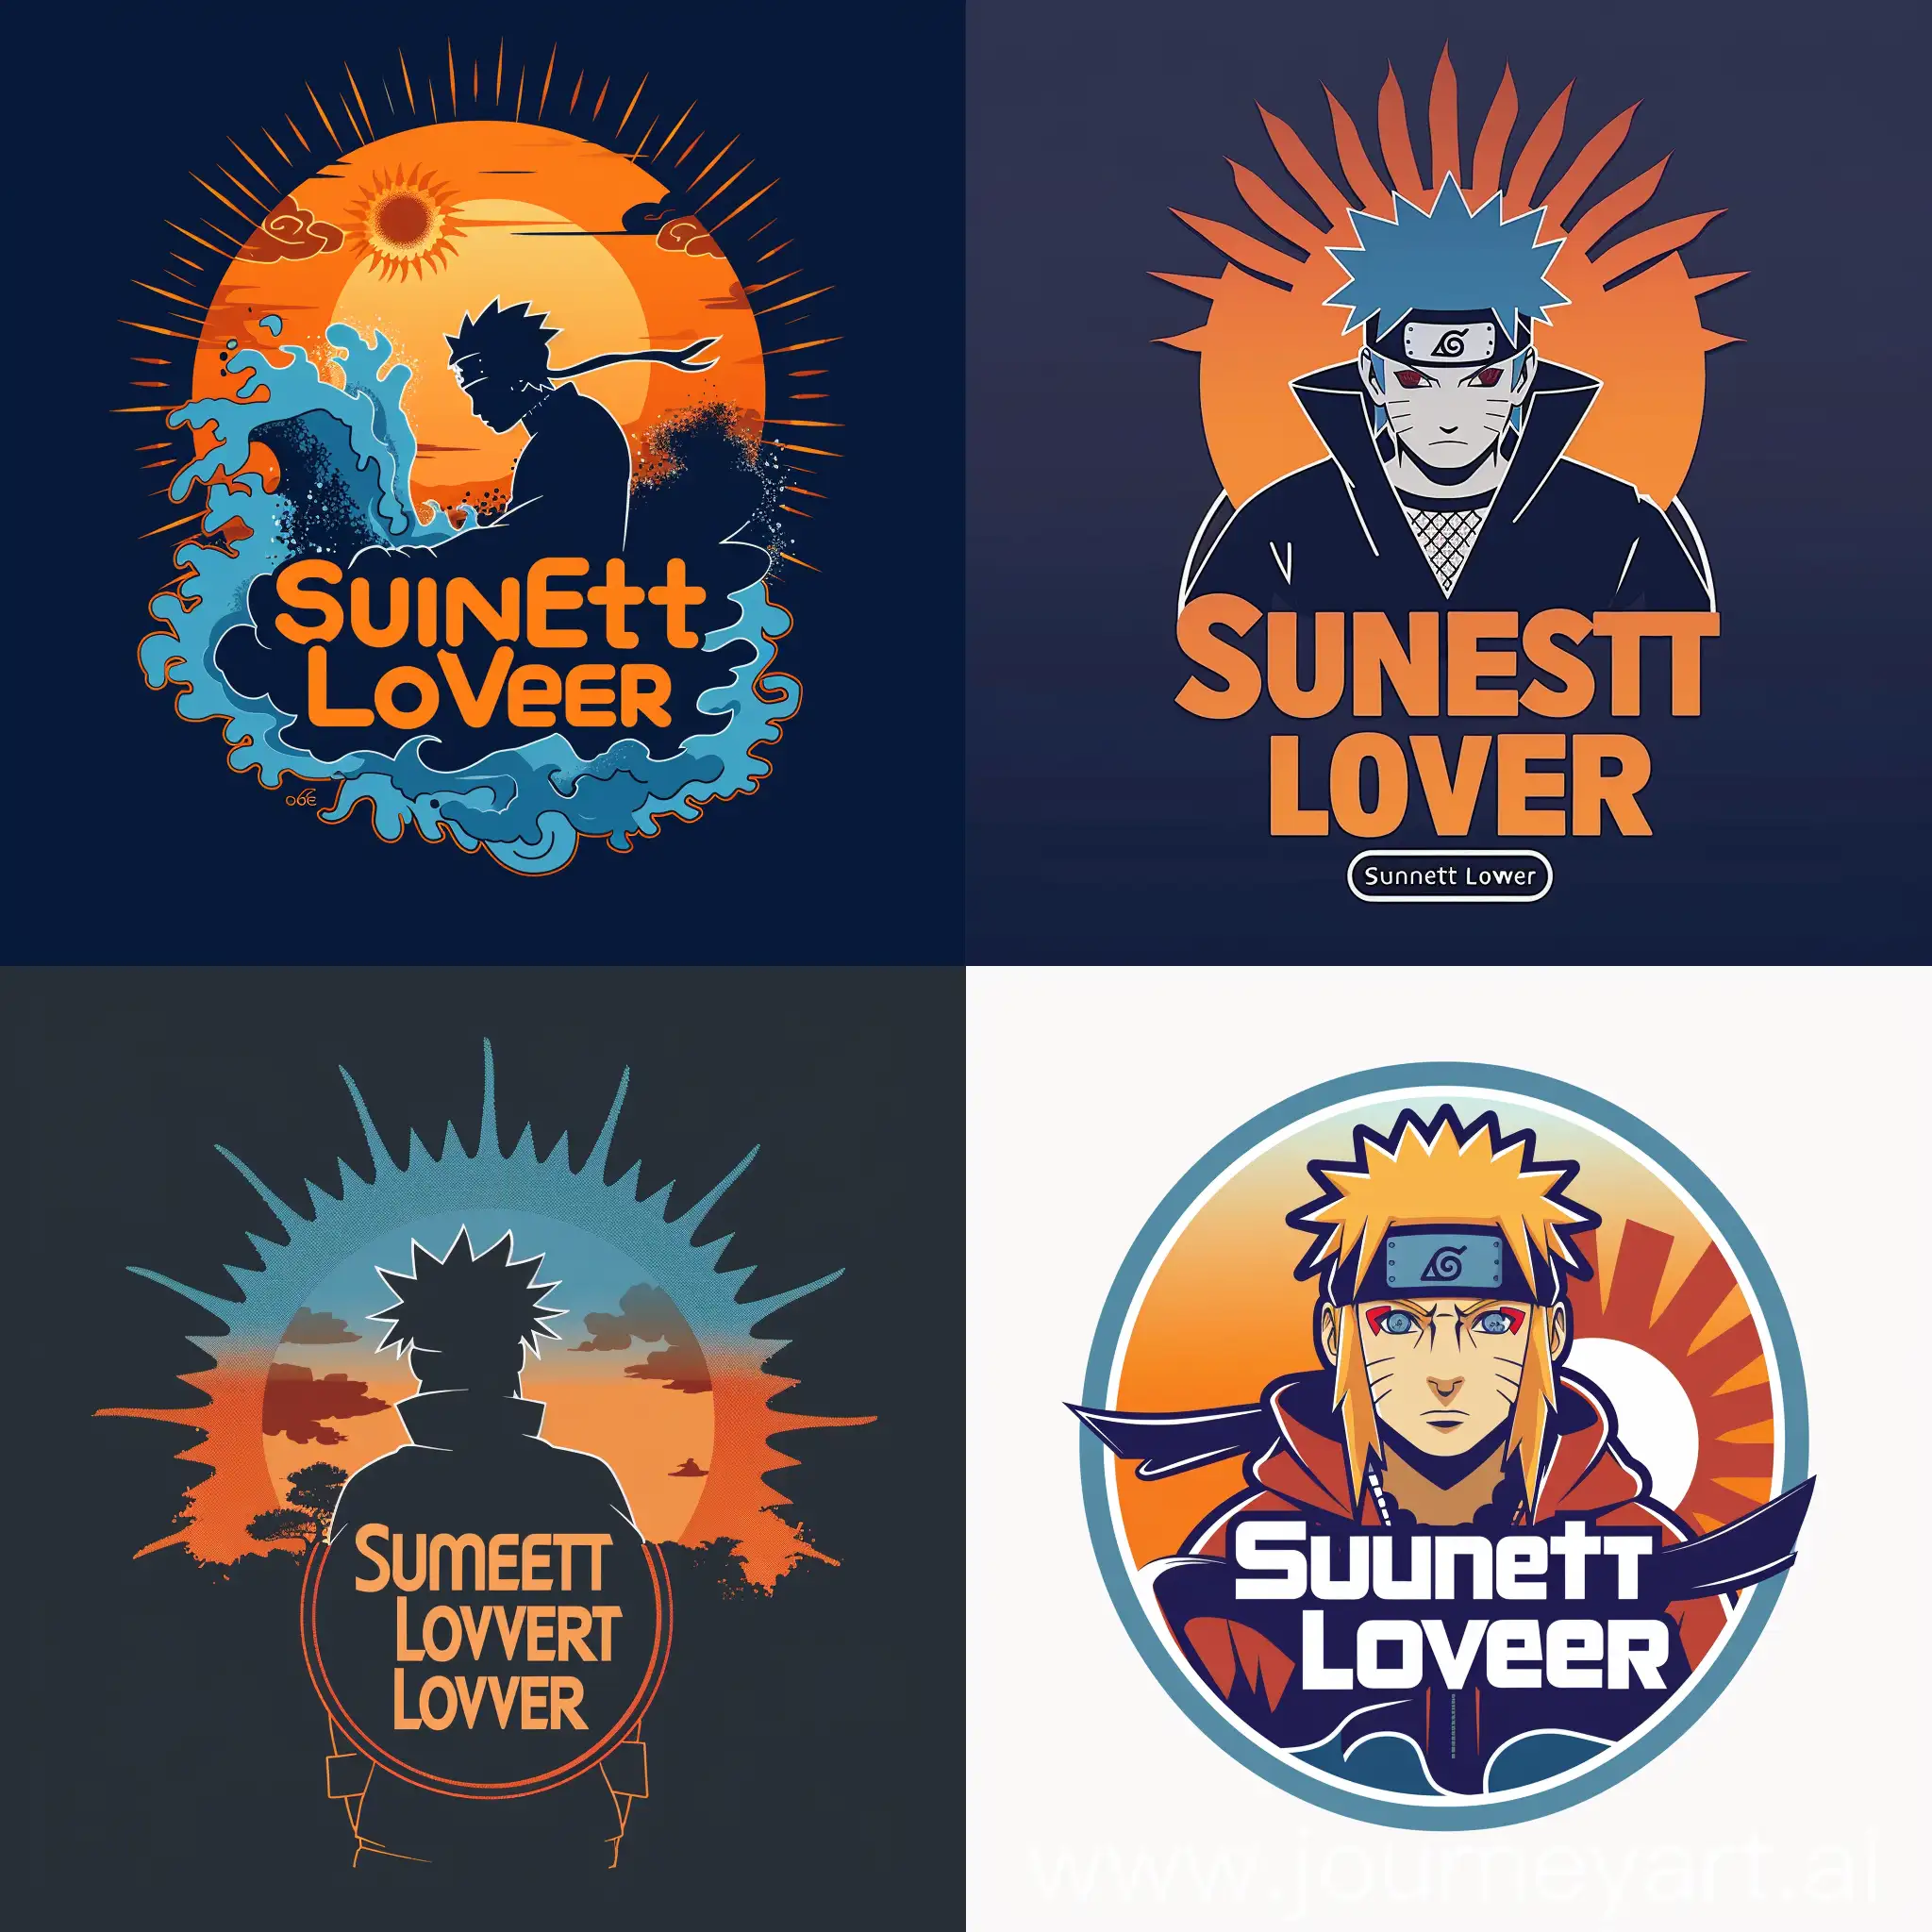 Логотип со словами "Sunset Lover", связанный с Минато, может содержать изображение заката на фоне, так как закат символизирует время, когда Минато использовал свои способности с помощью техники "Rasengan". Также логотип может включать в себя изображение лучей солнца, что ассоциируется с тем, как Минато величественно и ловко манипулировал светом и тенями, логотип со словами "Sunset Lover".
Цветовая палитра логотипа "Sunset Lover" может включать в себя оранжевые и голубые оттенки, которые напоминают о закате и небесах, логотип со словами "Sunset Lover".
Такой логотип может идеально передать эстетику аниме "Наруто" и уникальные характеристики Минато, которыми являются его мудрость, сила и спокойствие, которые он проявлял даже в самых сложных ситуациях, логотип со словами "Sunset Lover"